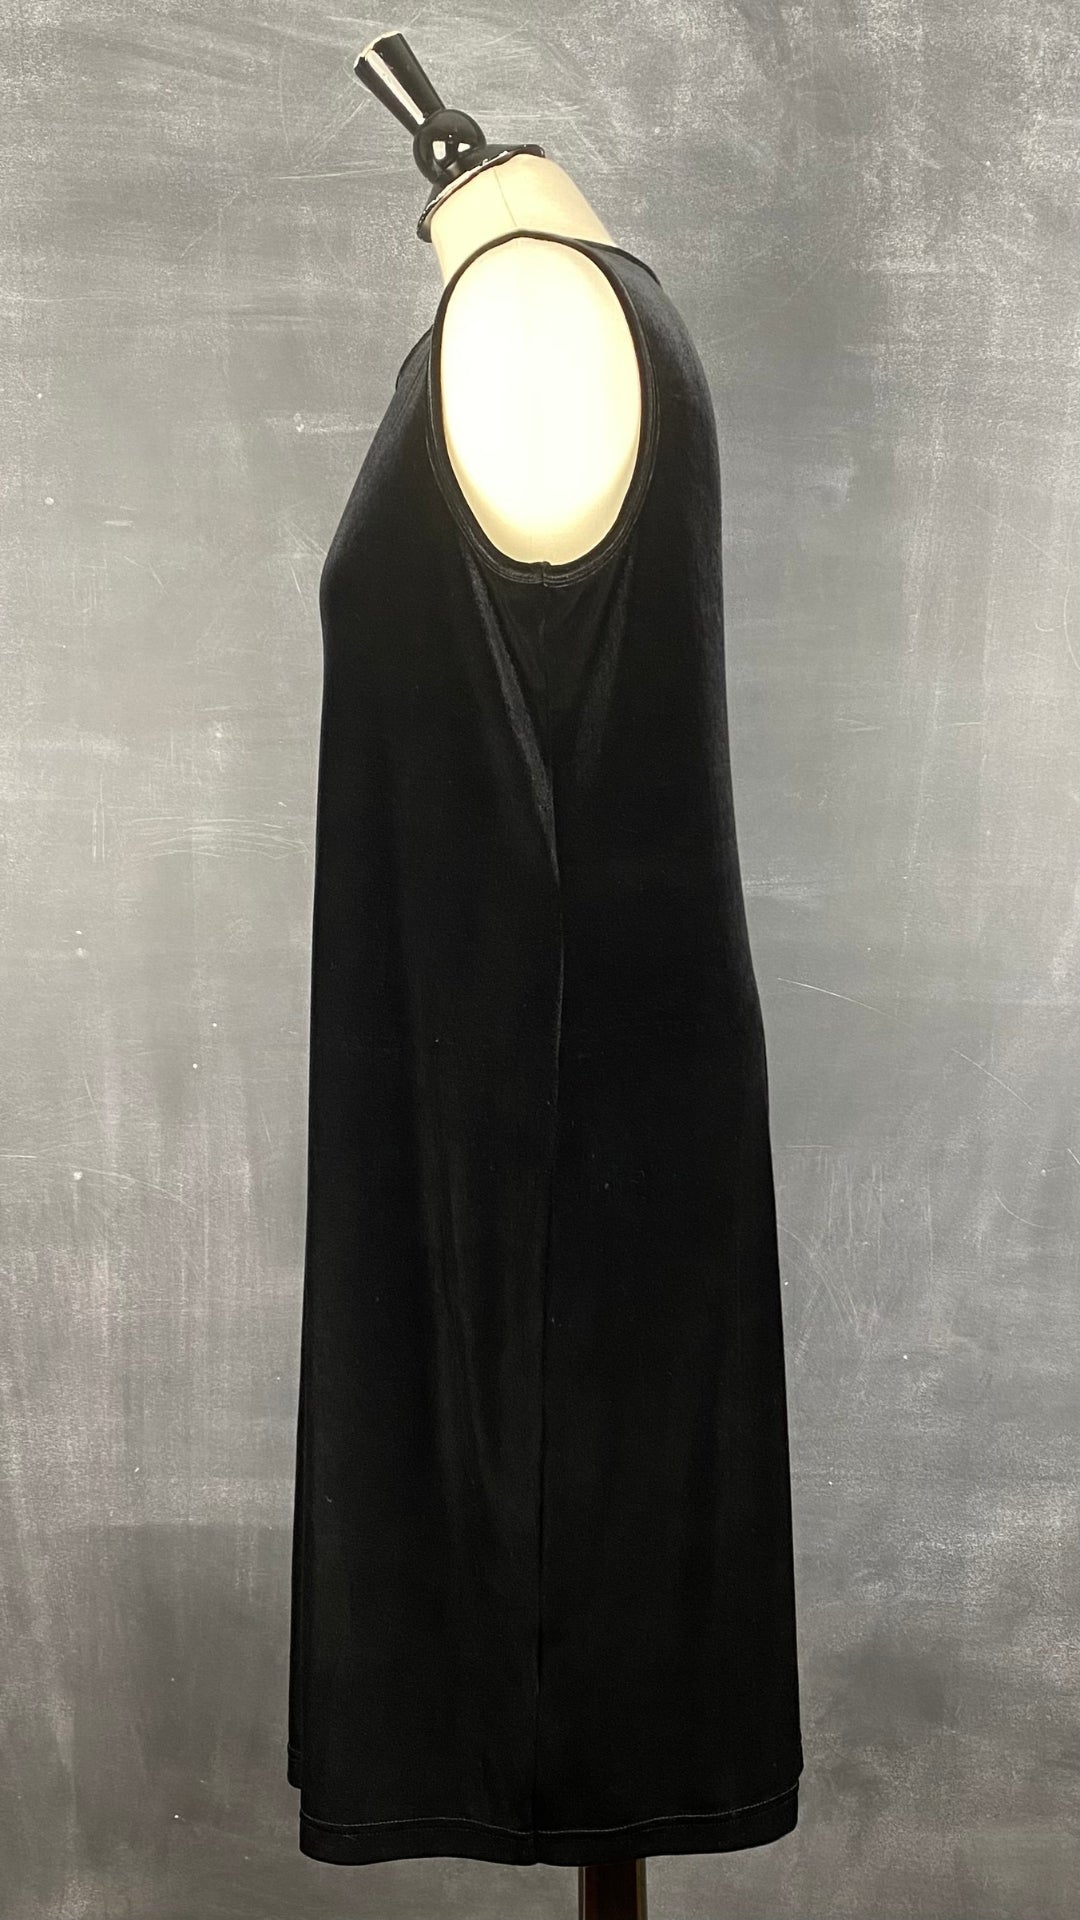 Robe velours noire sans manches Coccoli, taille l-xl. Vue de côté.